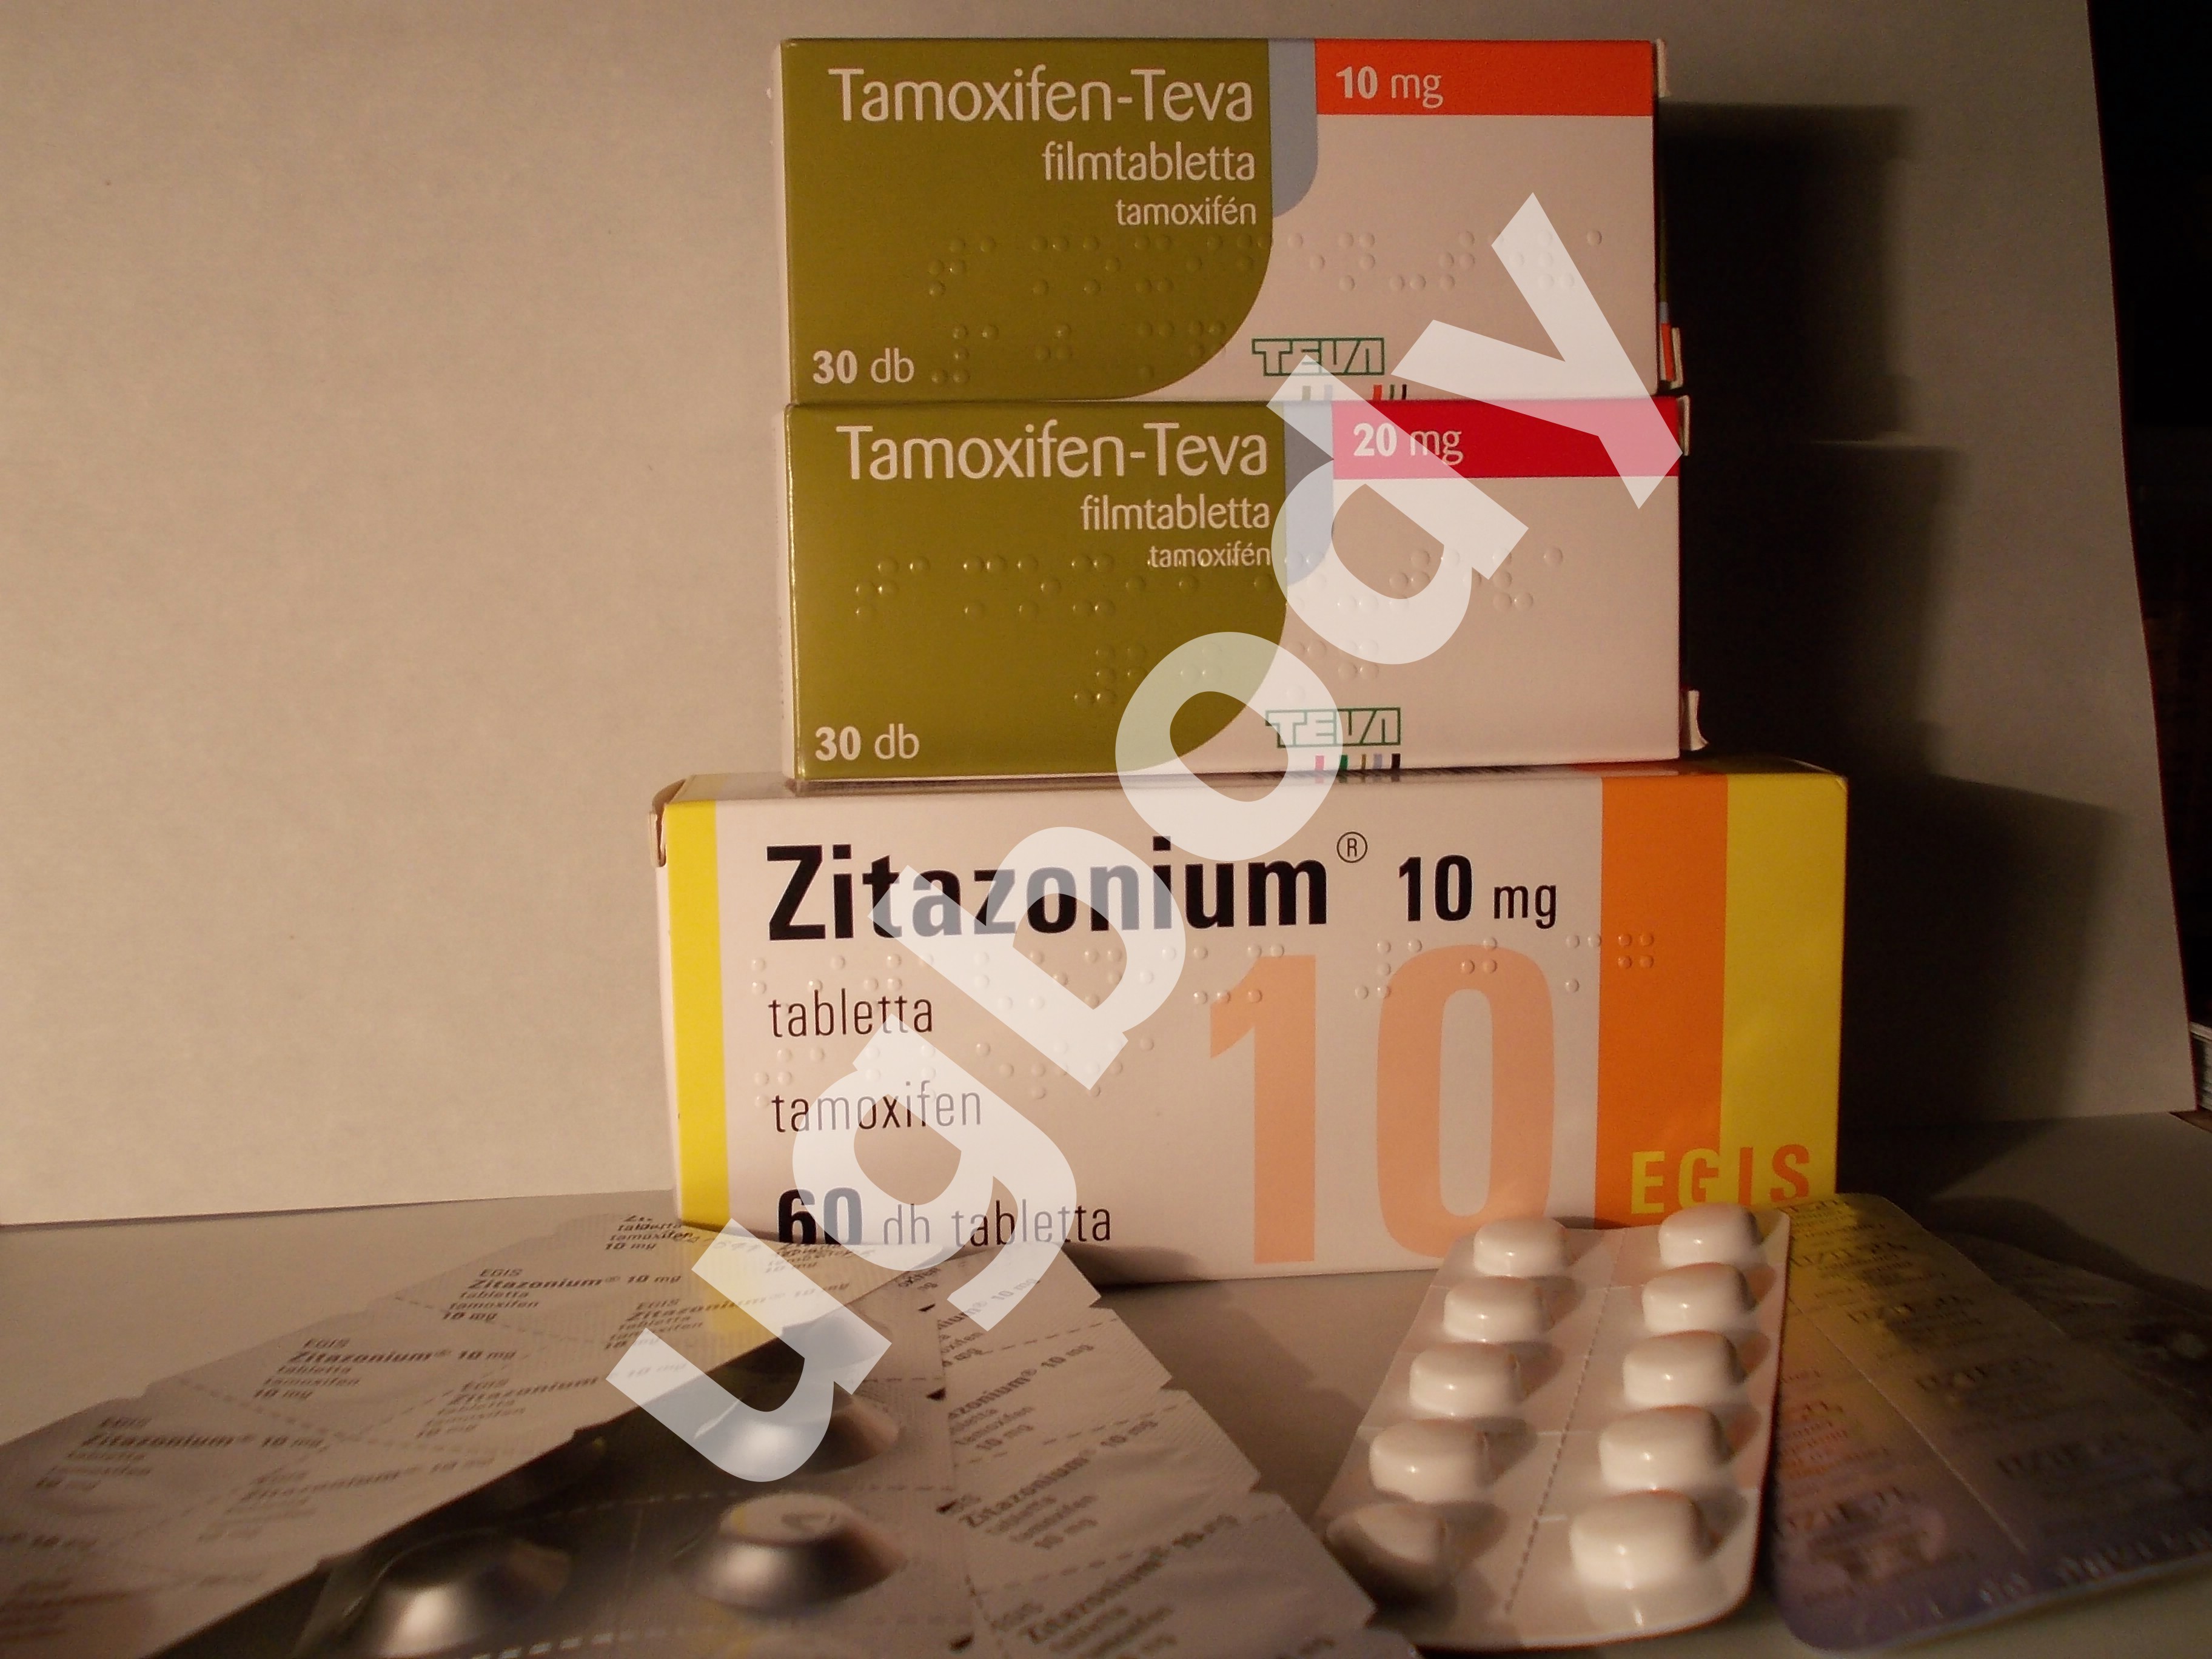 pilule steroide en 2021 – Prédictions